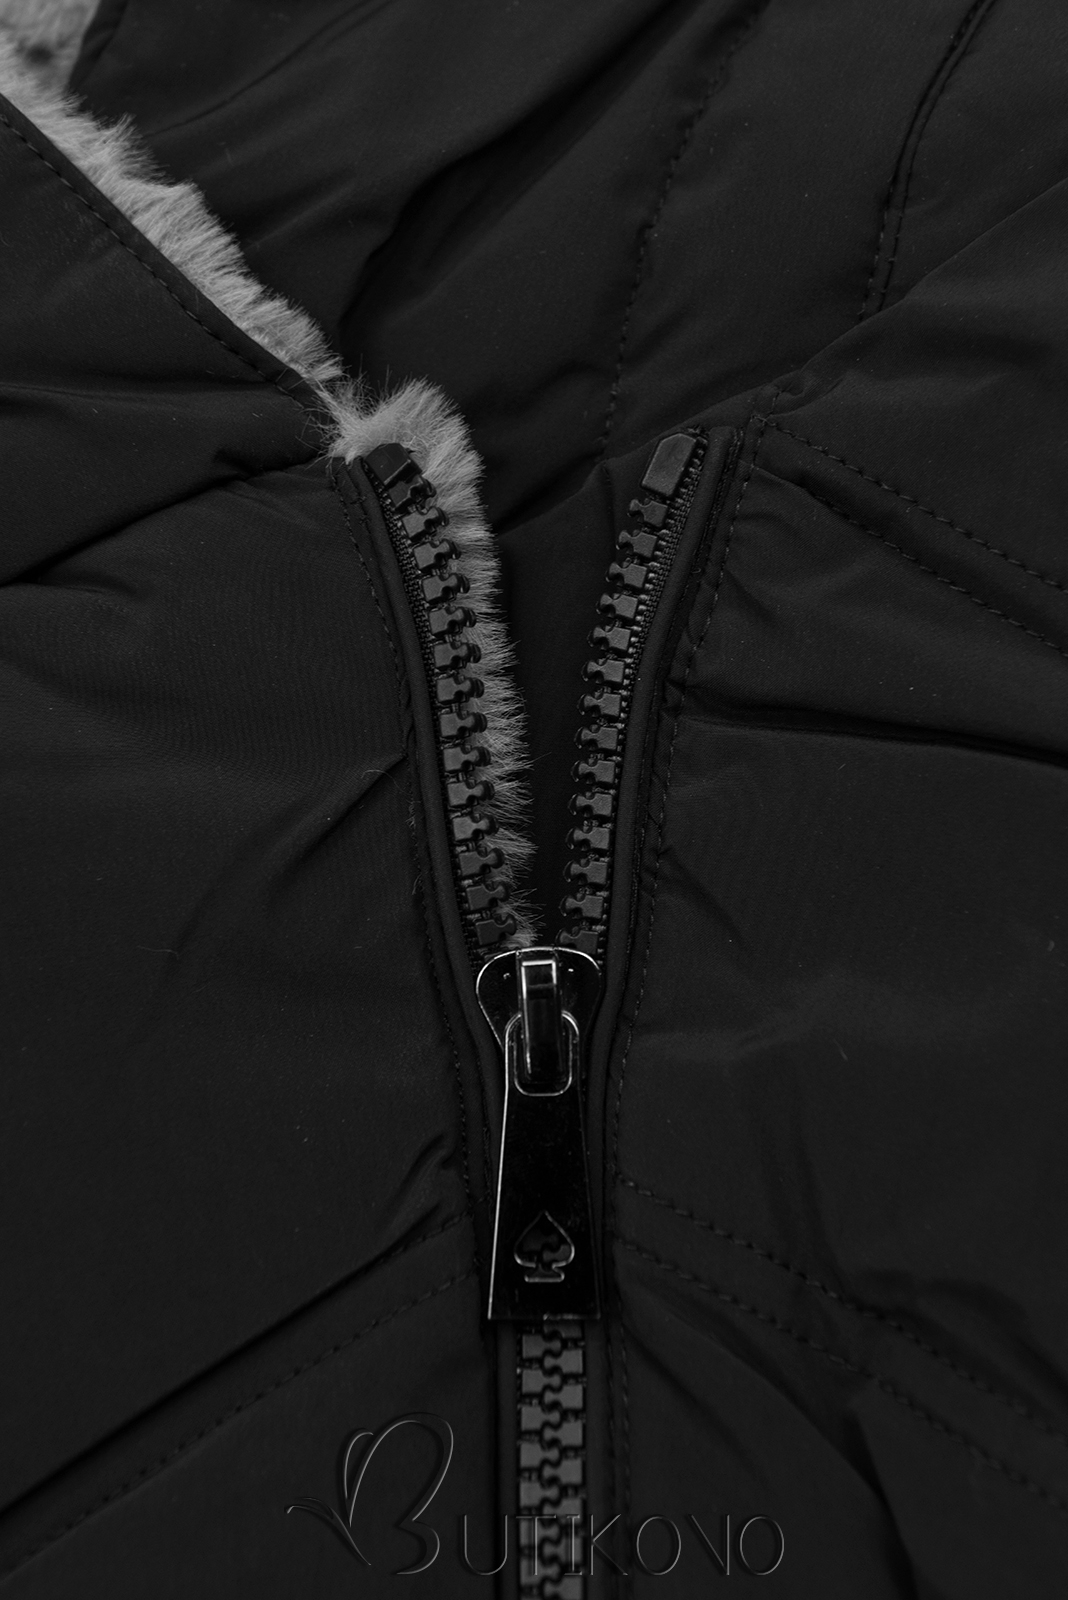 Čierna zimná bunda s kvetinovou podšívkou